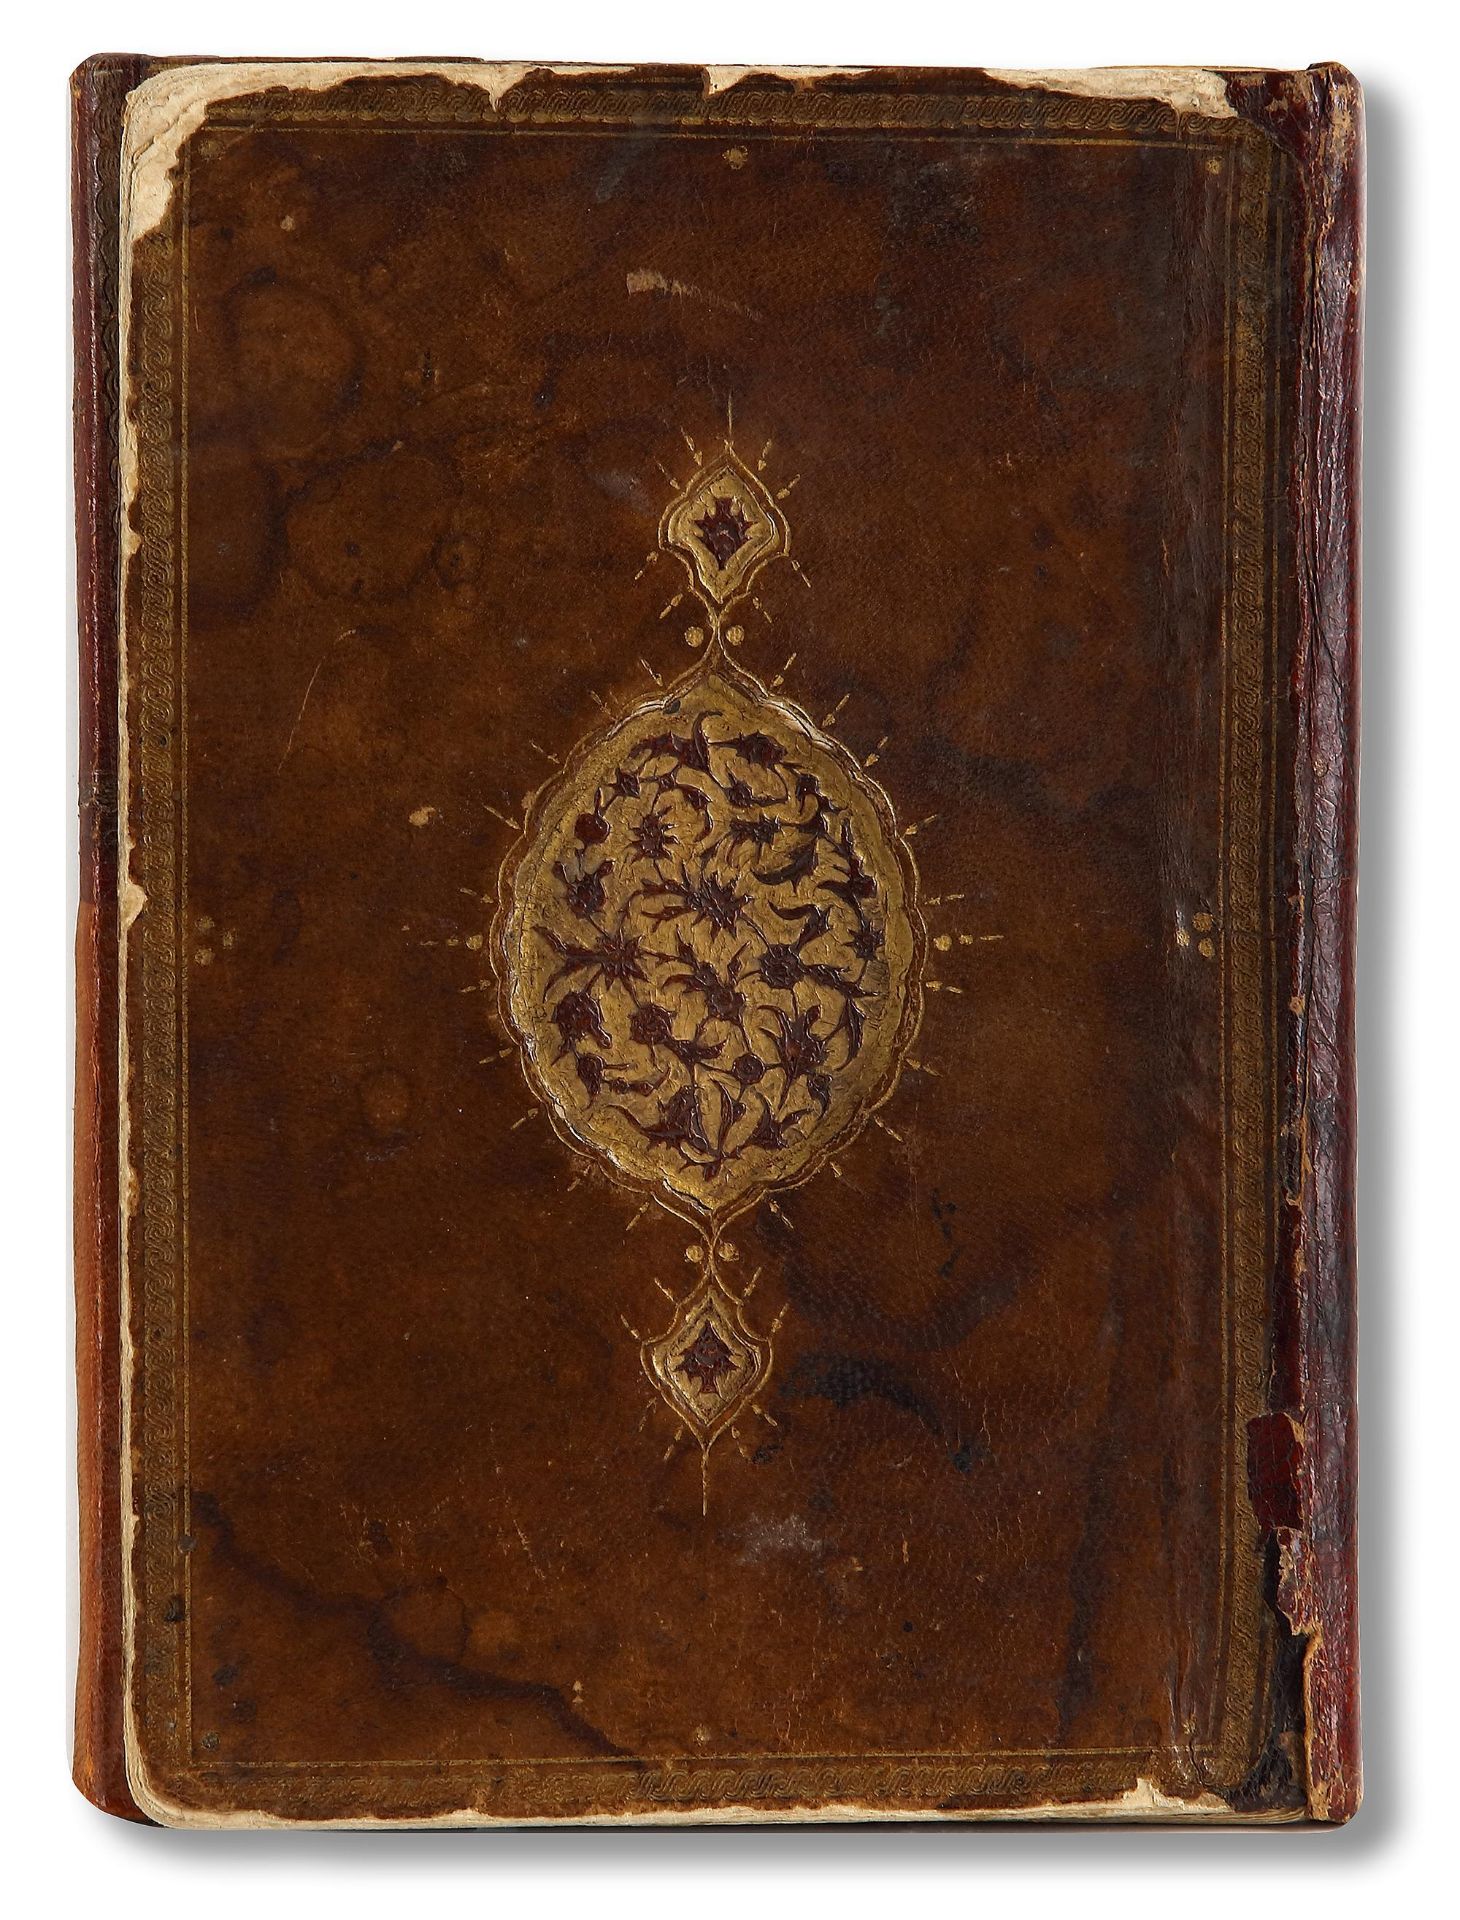 AN OTTOMAN MANUSCRIPT COPIED BY YUSUF IBN ABD AL-WAHHAB 1099 AH/1688 AD - Image 15 of 16